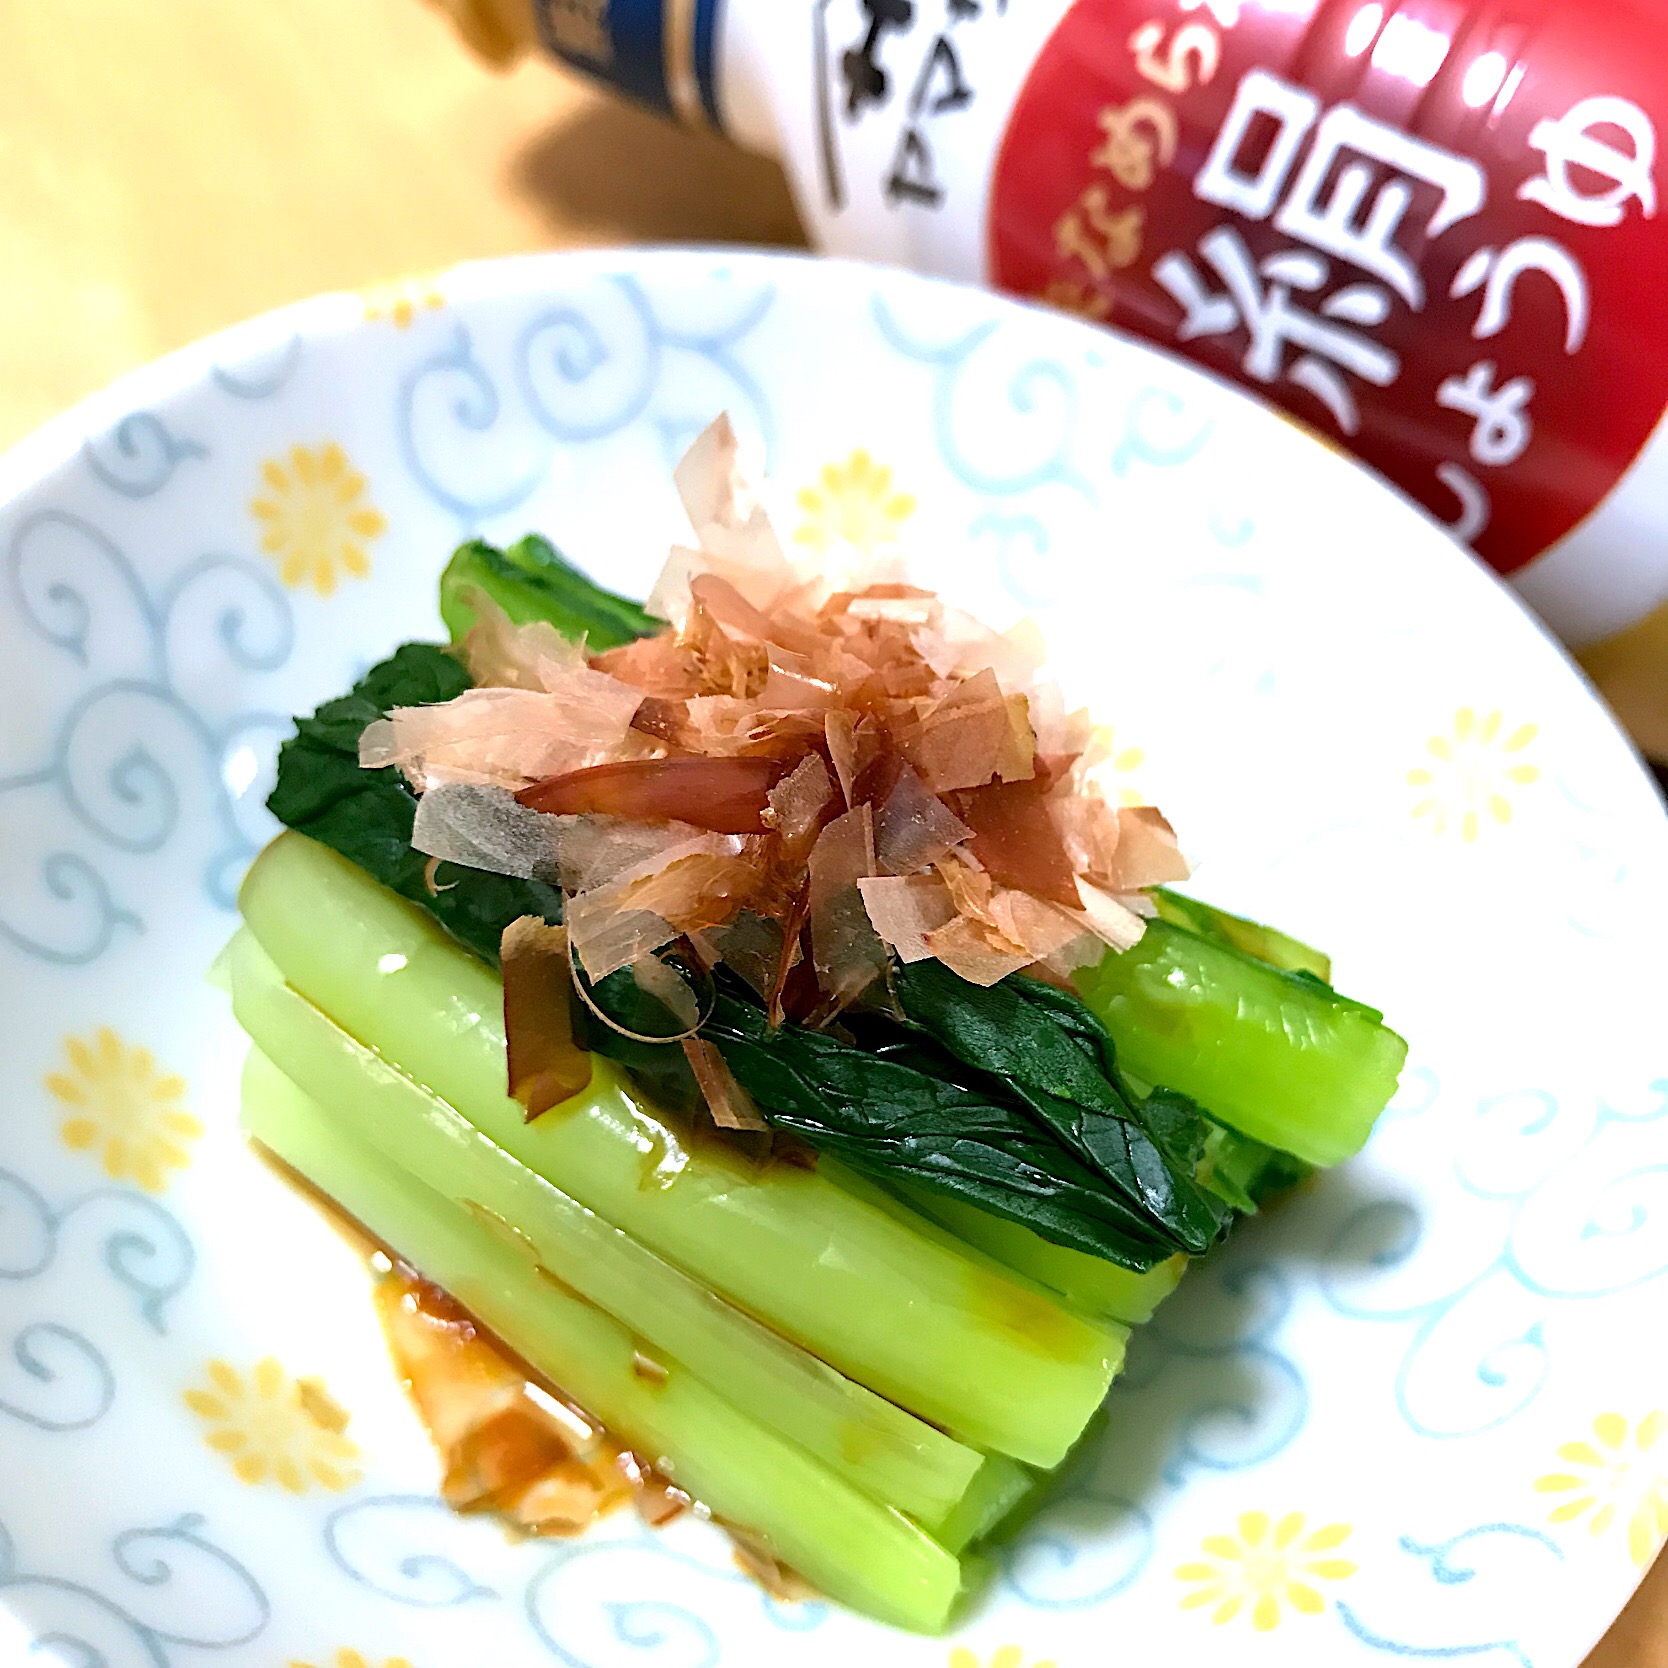 小松菜のお浸し #絹しょうゆ  #絹和えグランプリ2018 #小松菜のお浸し